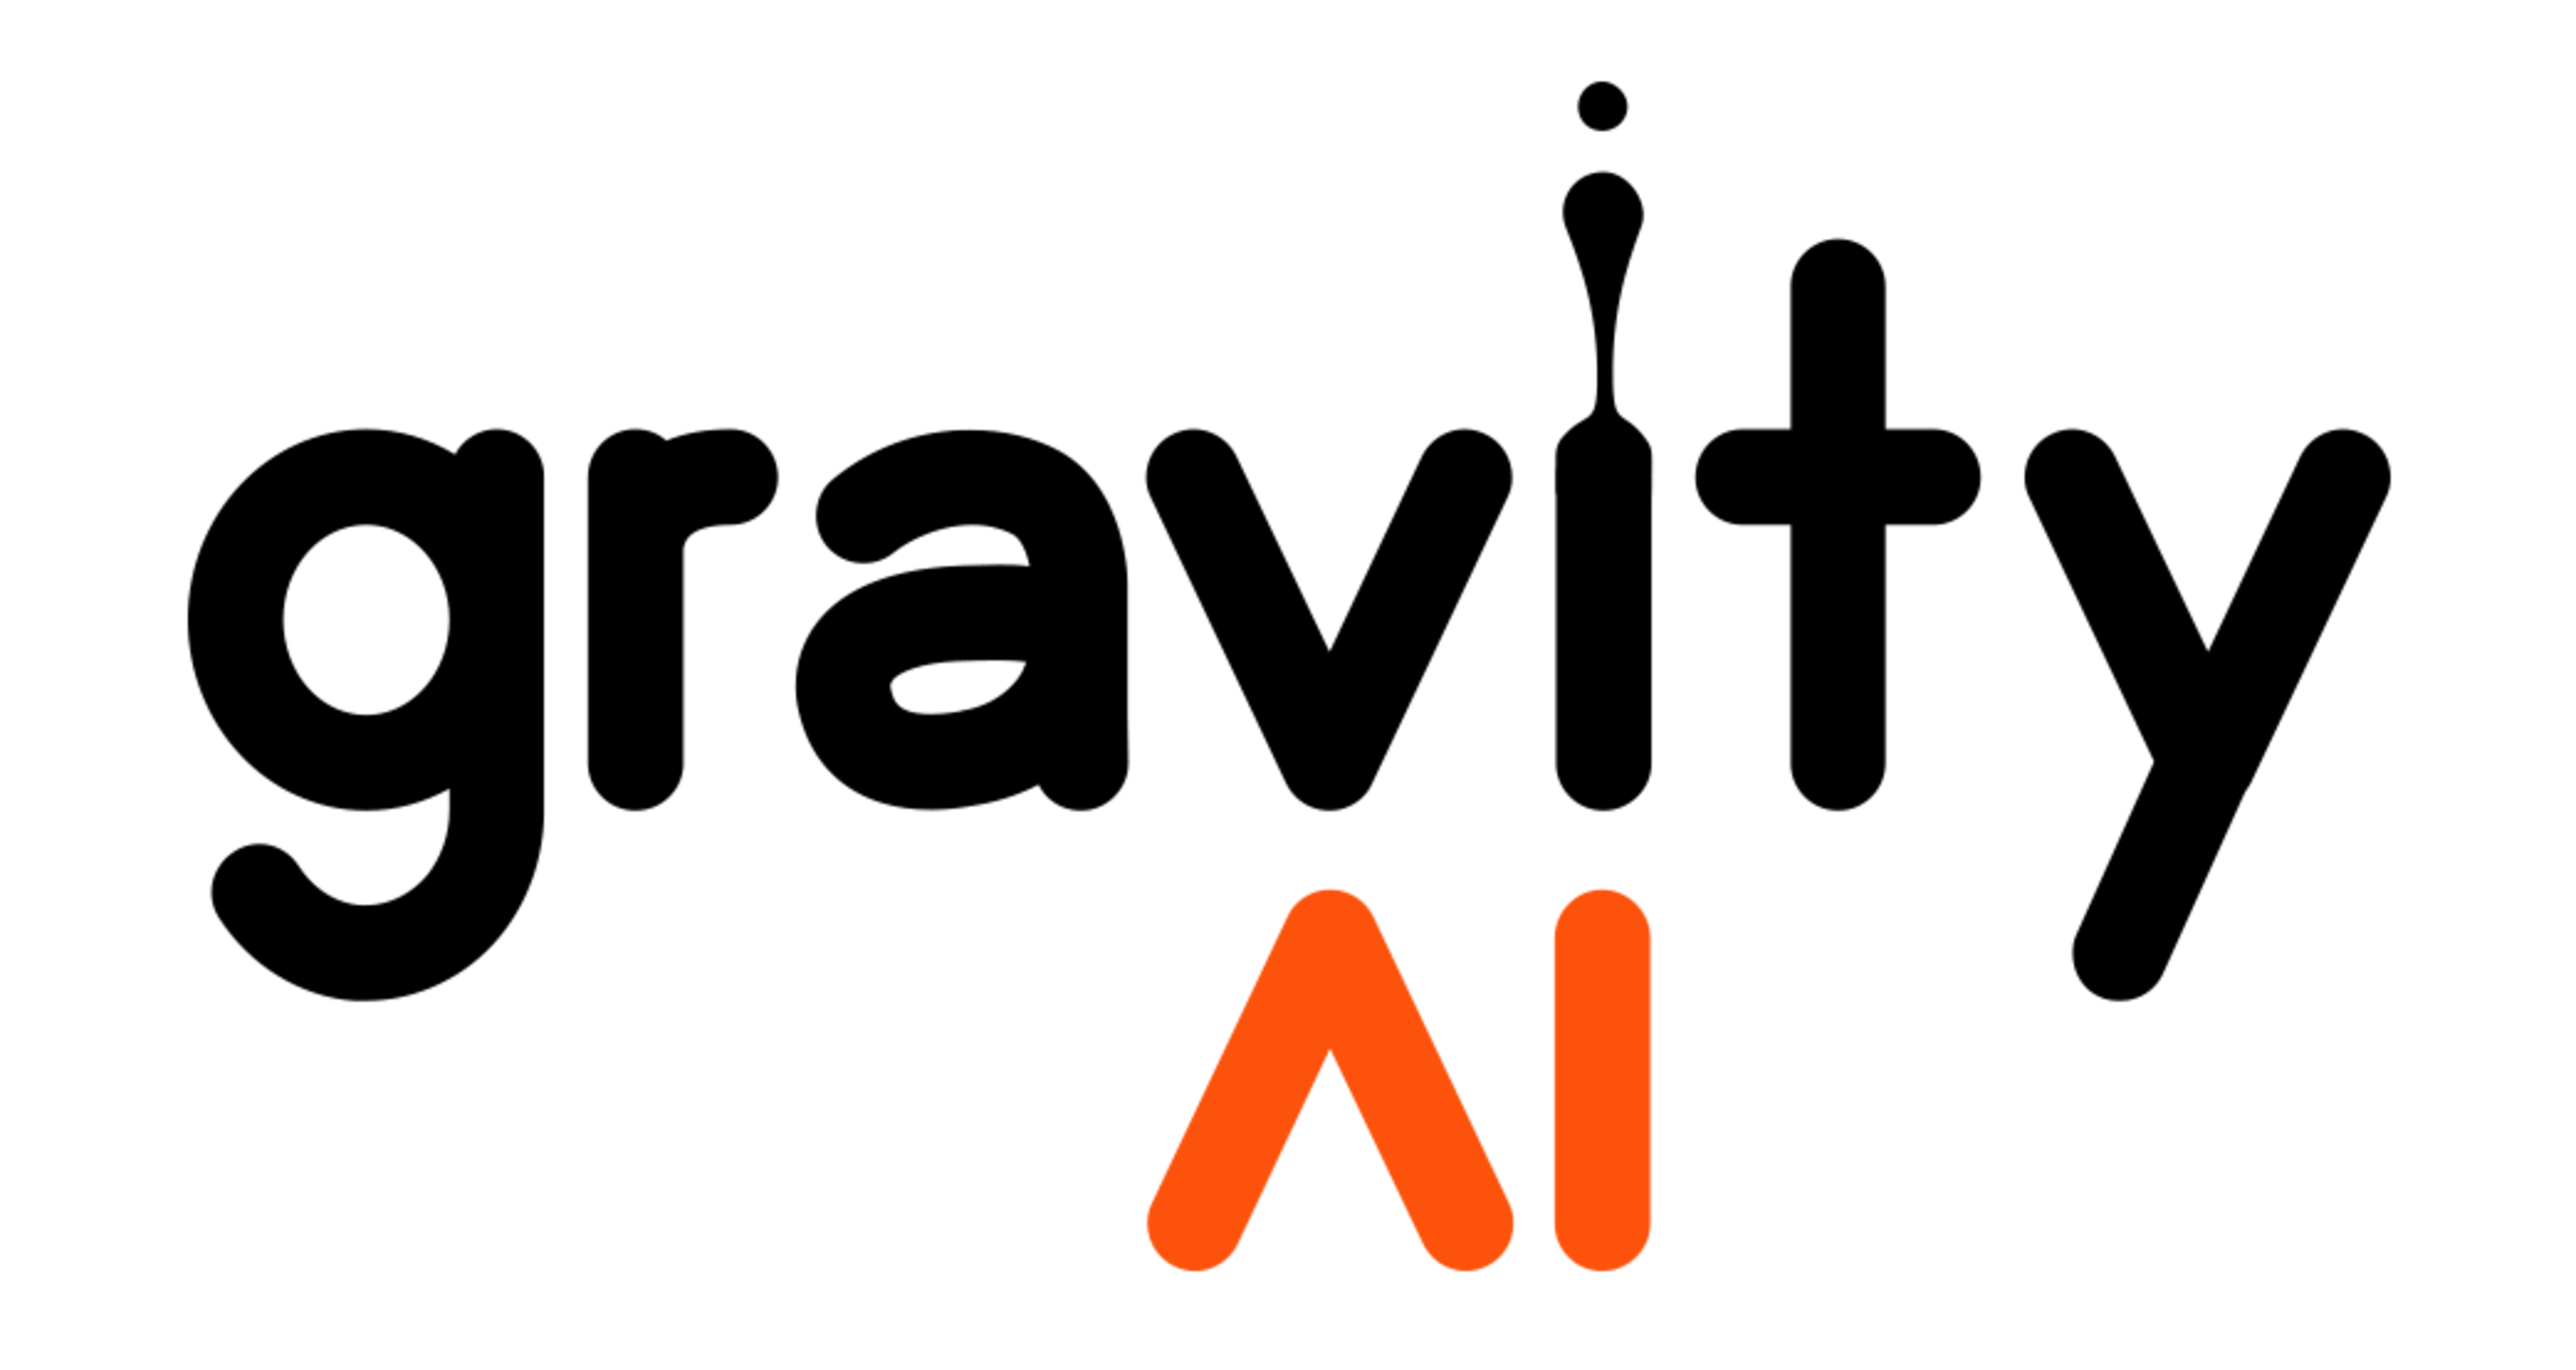 //vernai.com/wp-content/uploads/2021/02/gravity-ai-logo__2.png